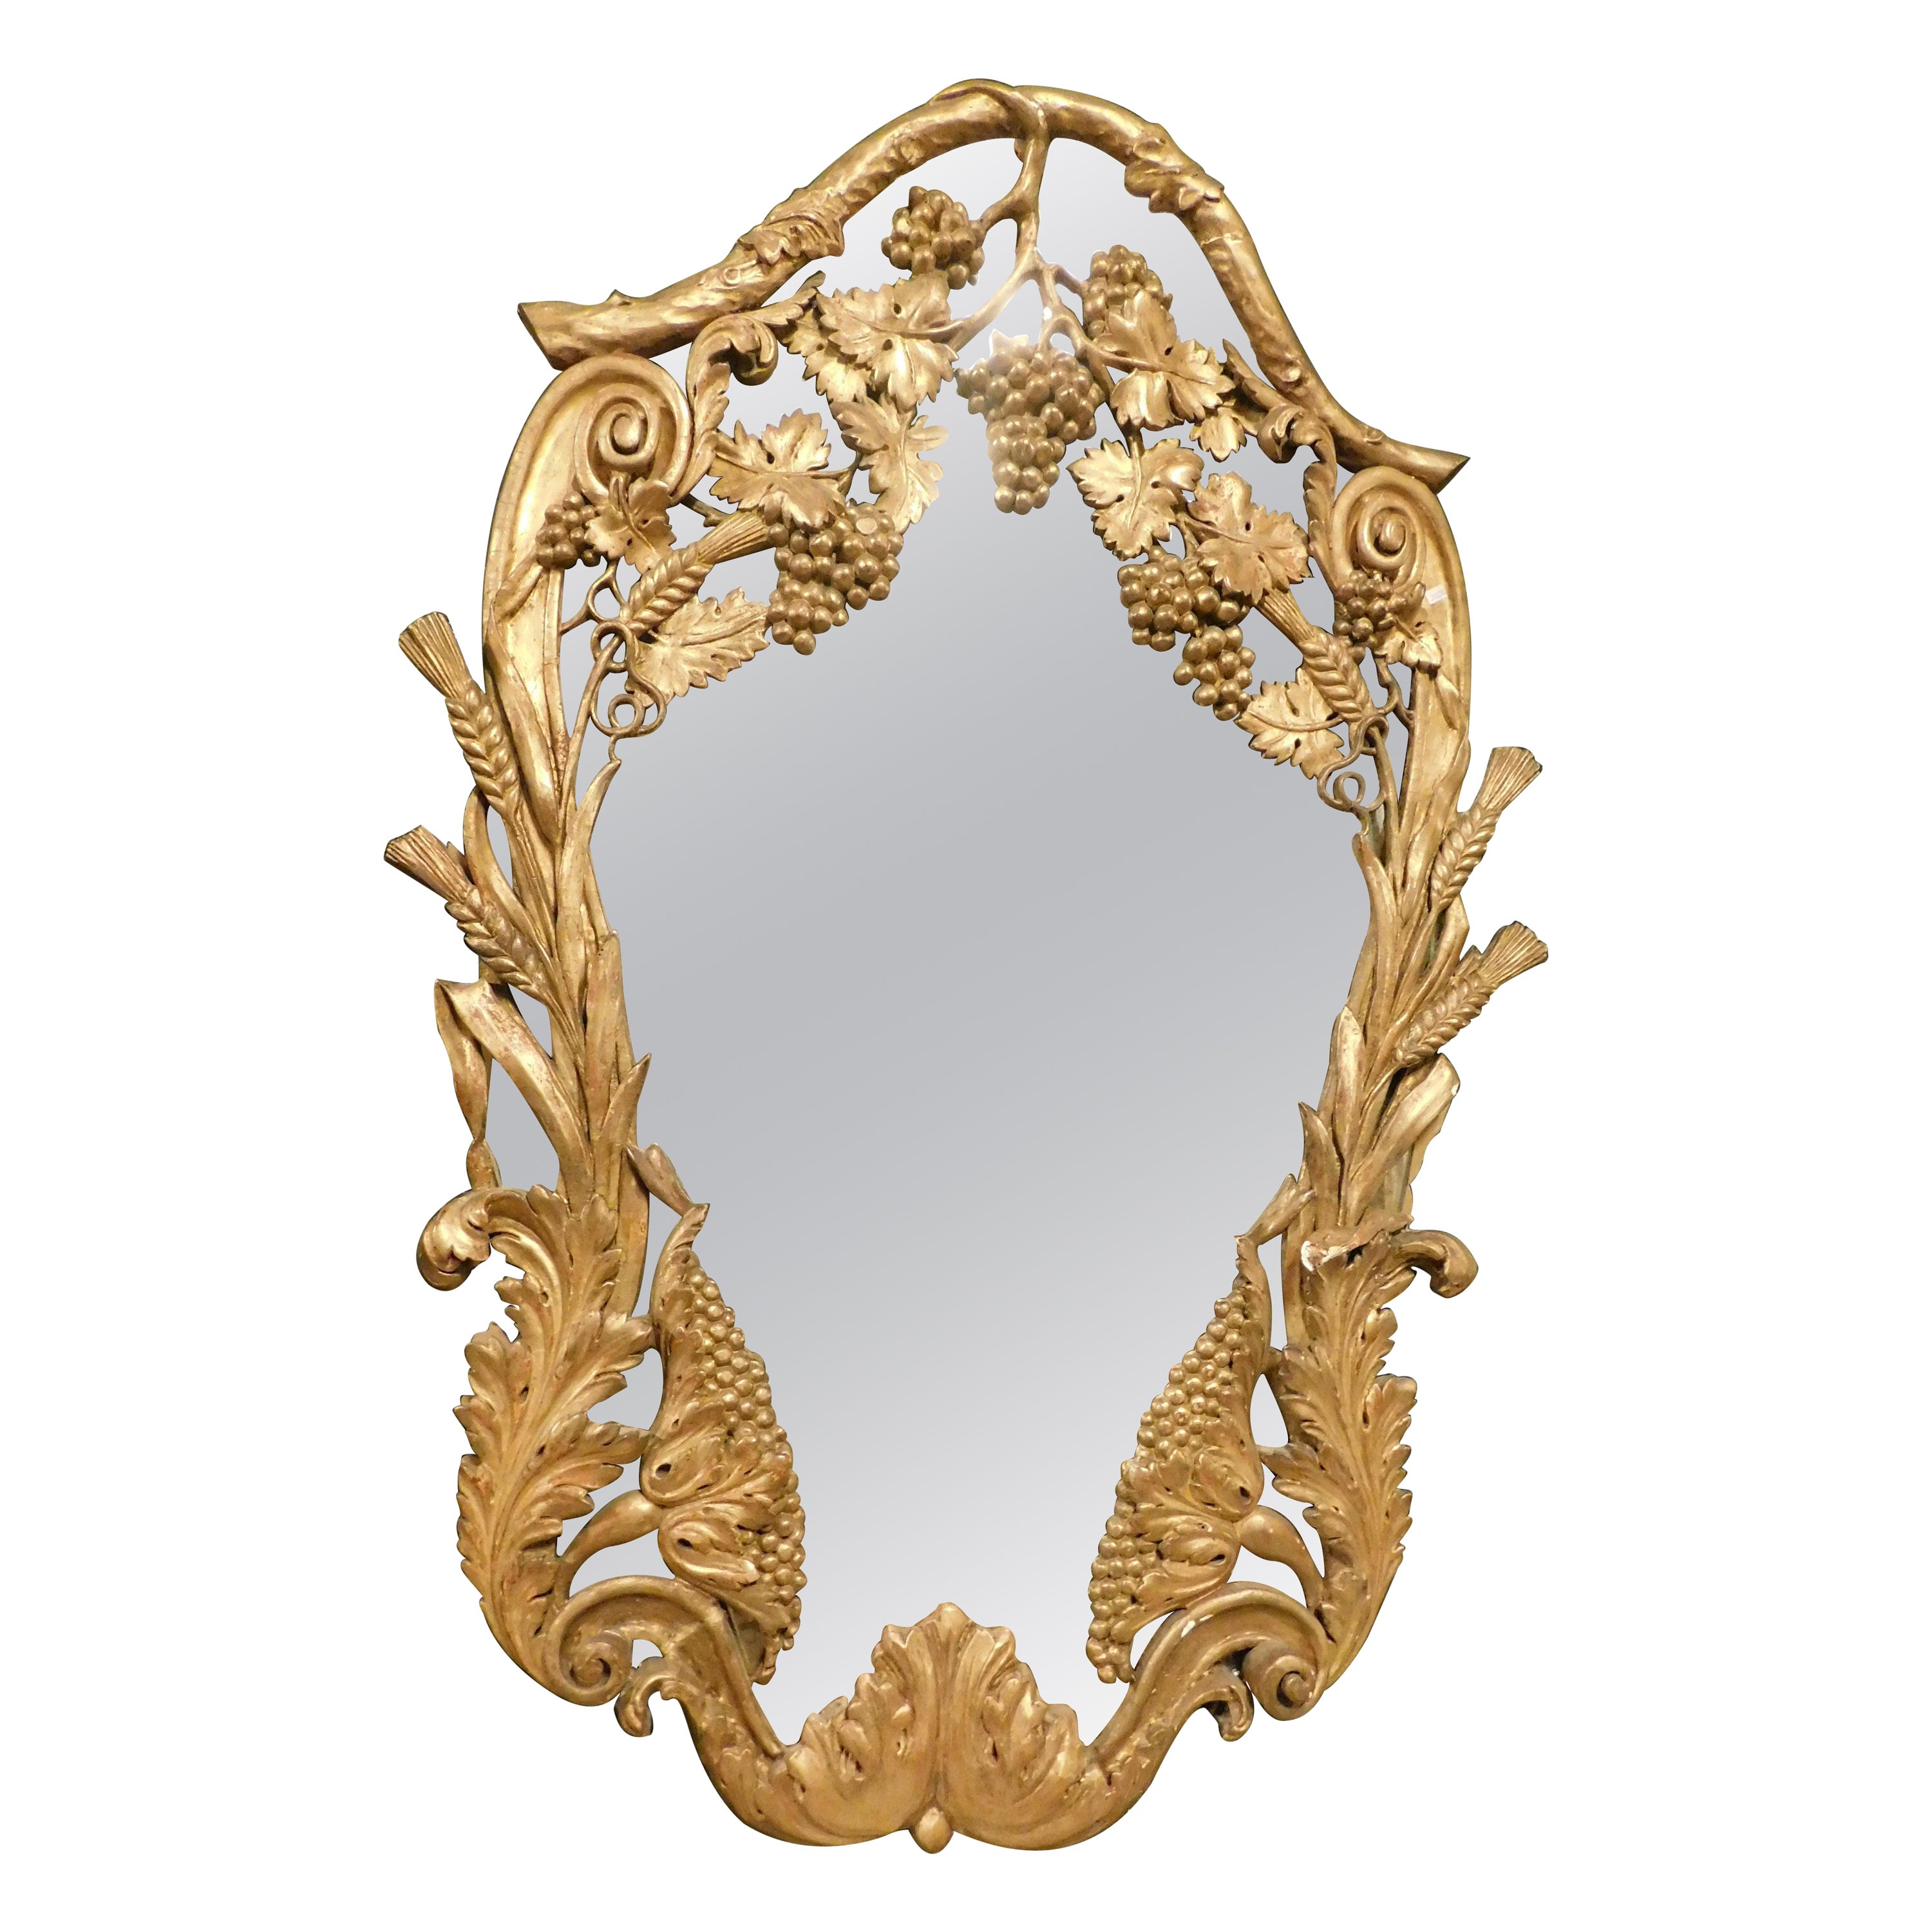 Spiegel, geschnitzt mit Trauben und vergoldet, 19. Jahrhundert, Italien